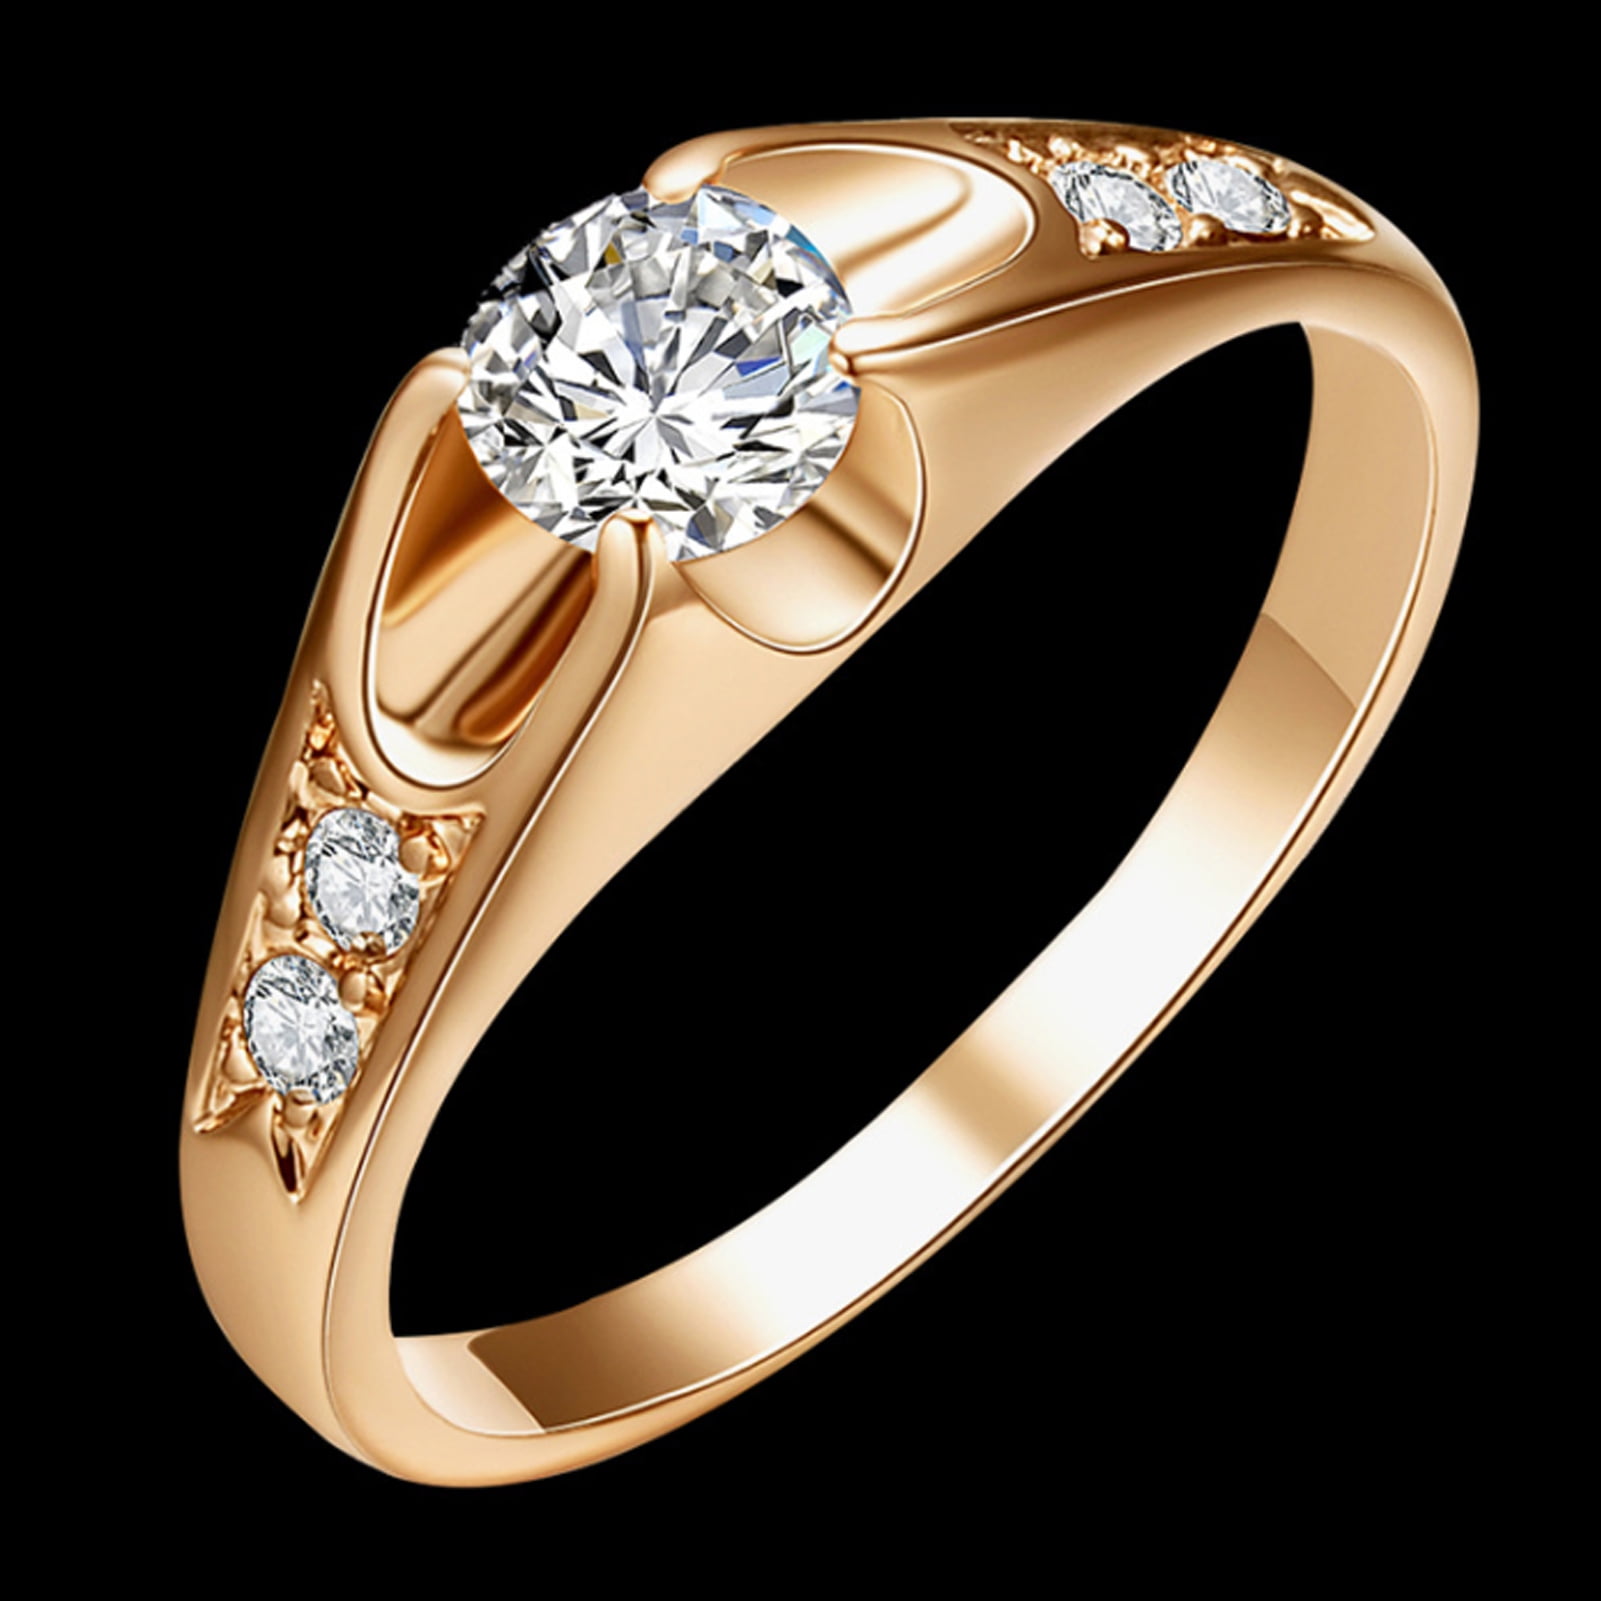 Real 999 24K Yellow Gold 3D Hard Gold Flower Ring US6.5 Best Gift For Women  | eBay